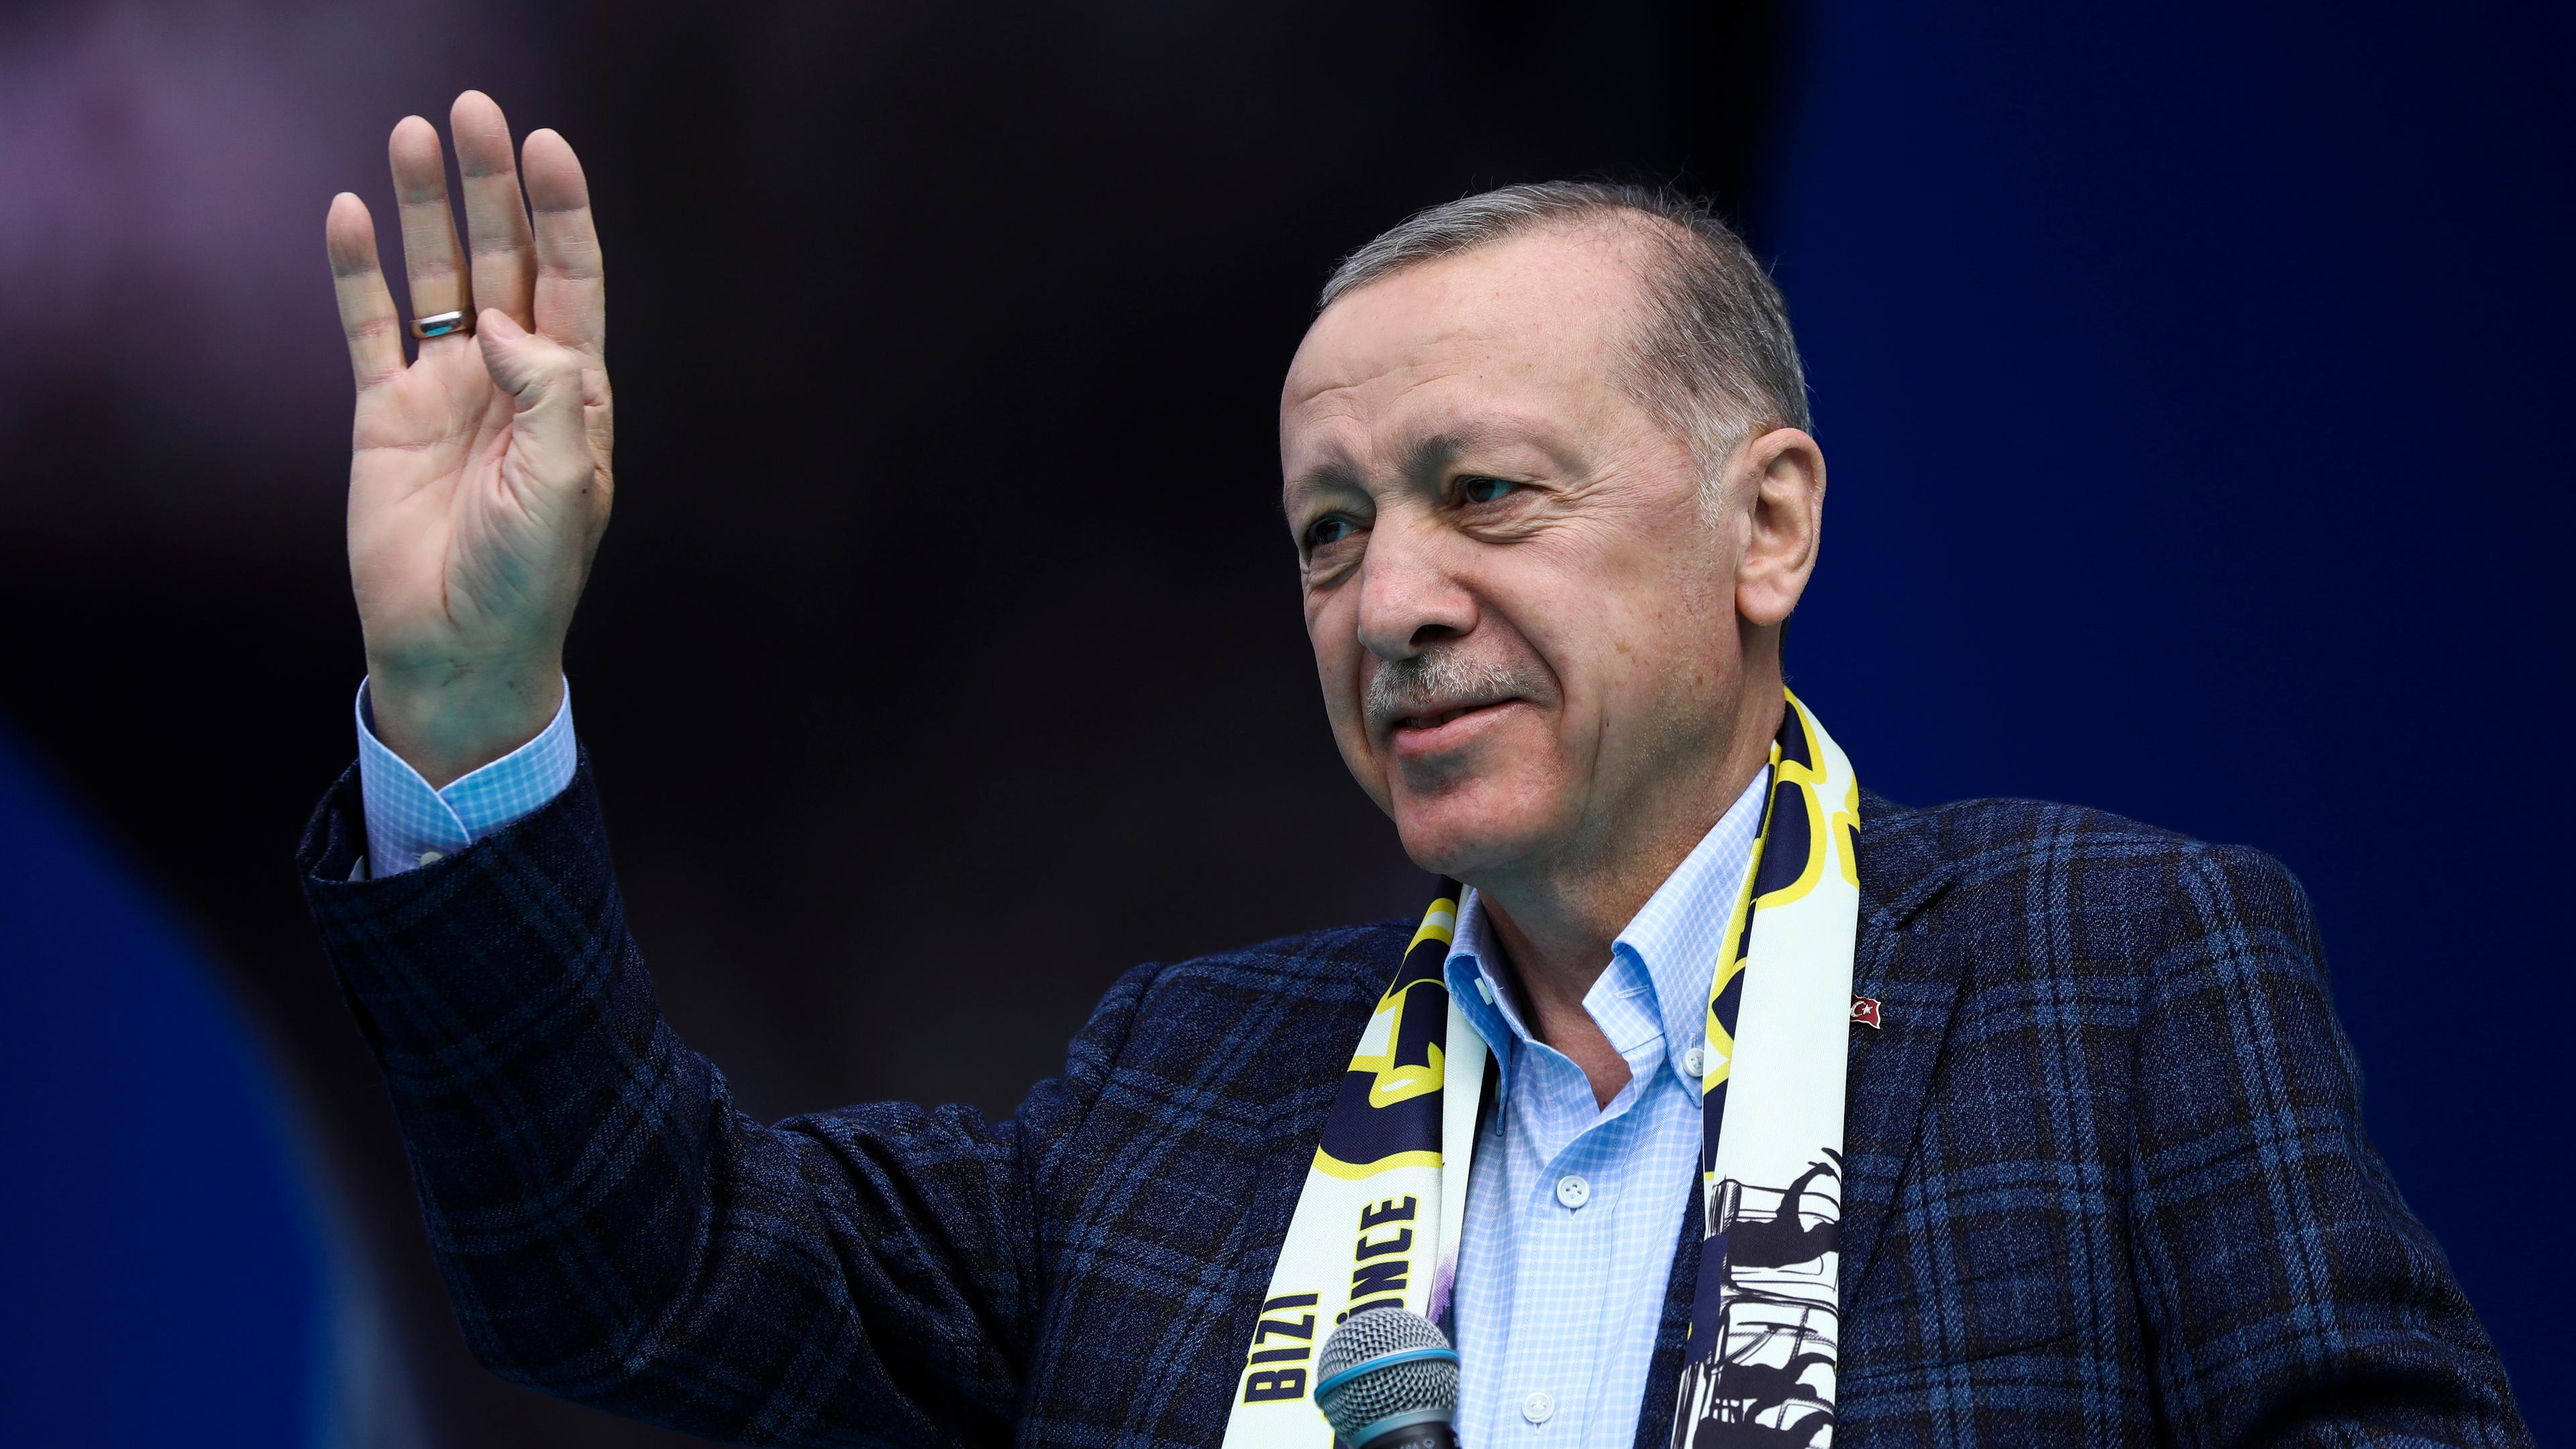 30.04.23, Ankara: Der türkische Präsident Erdogan winkt während einer Wahlkampfrede dem Publikum zu.